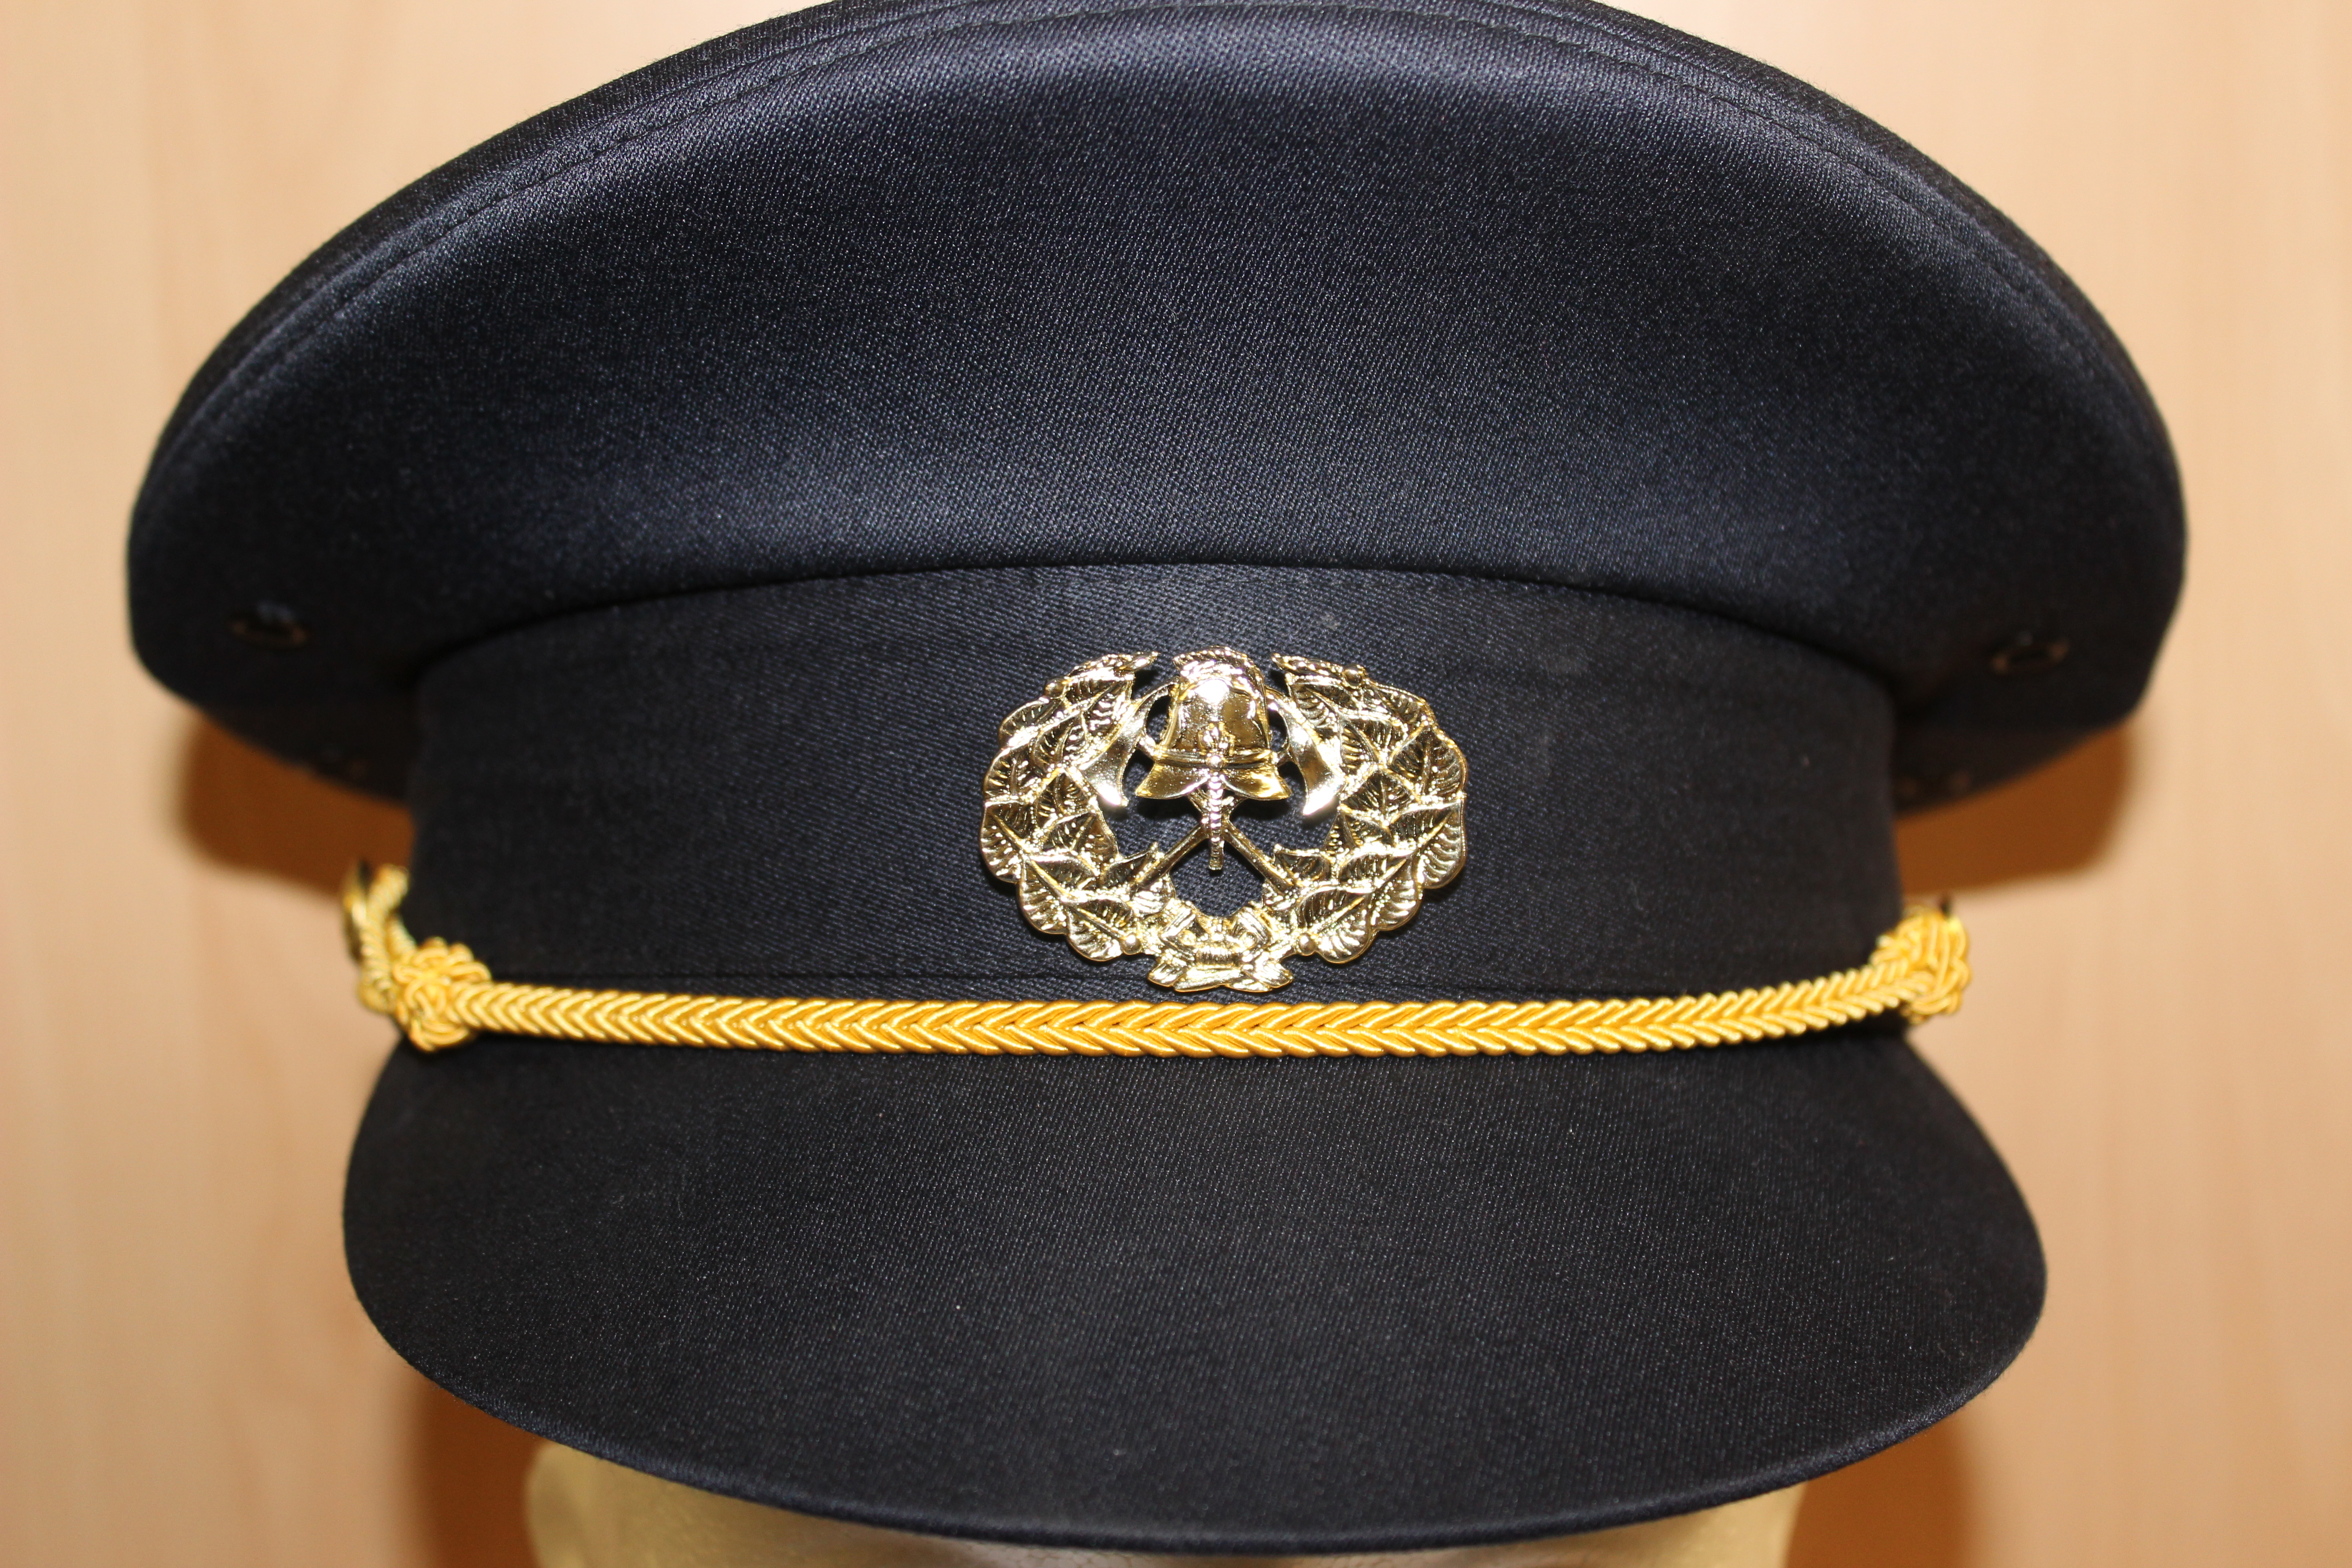 Odznak na čepici pro HZSP